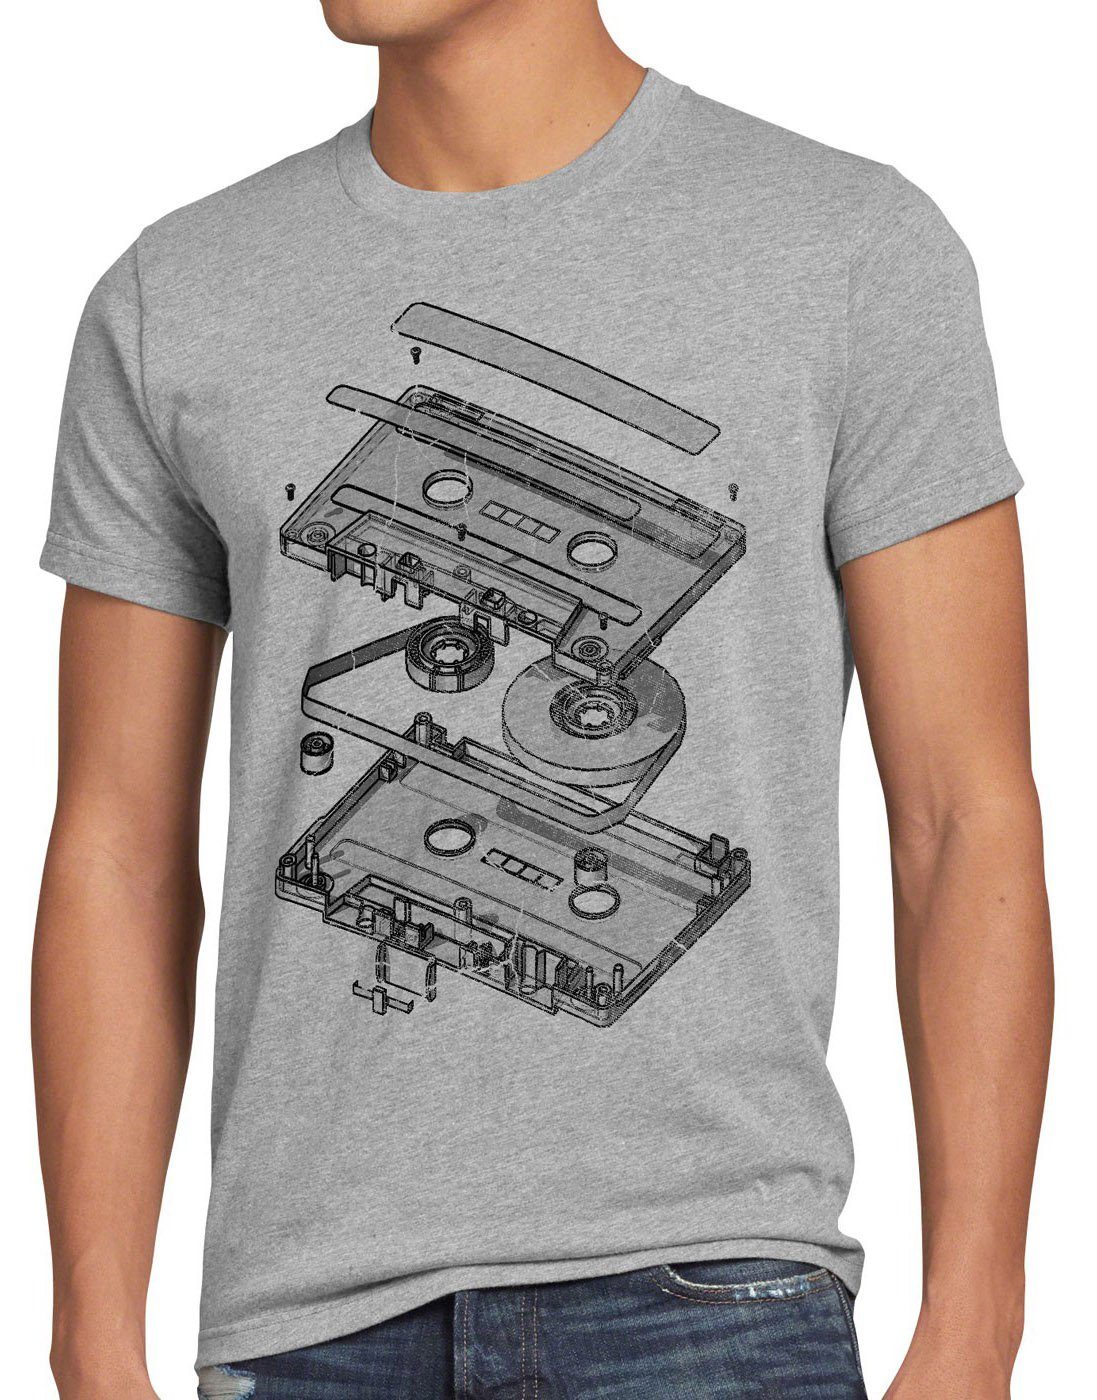 style3 Print-Shirt Herren dj T-Shirt cd Tape ndw Kassette turntable mc 80er 3D meliert vinyl grau disko analog